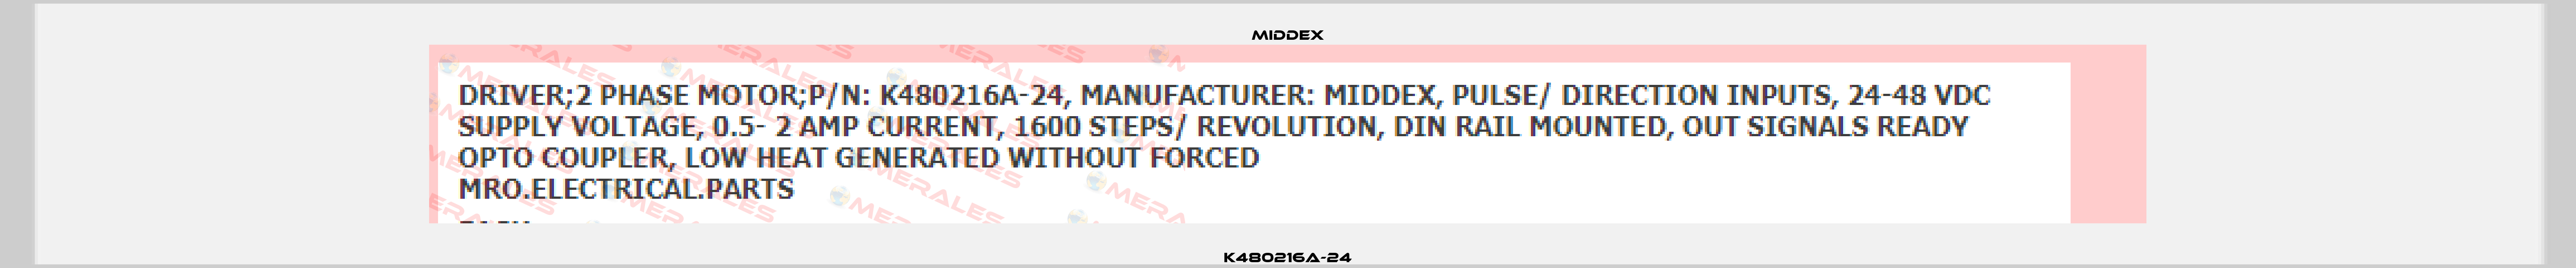 K480216A-24 Middex